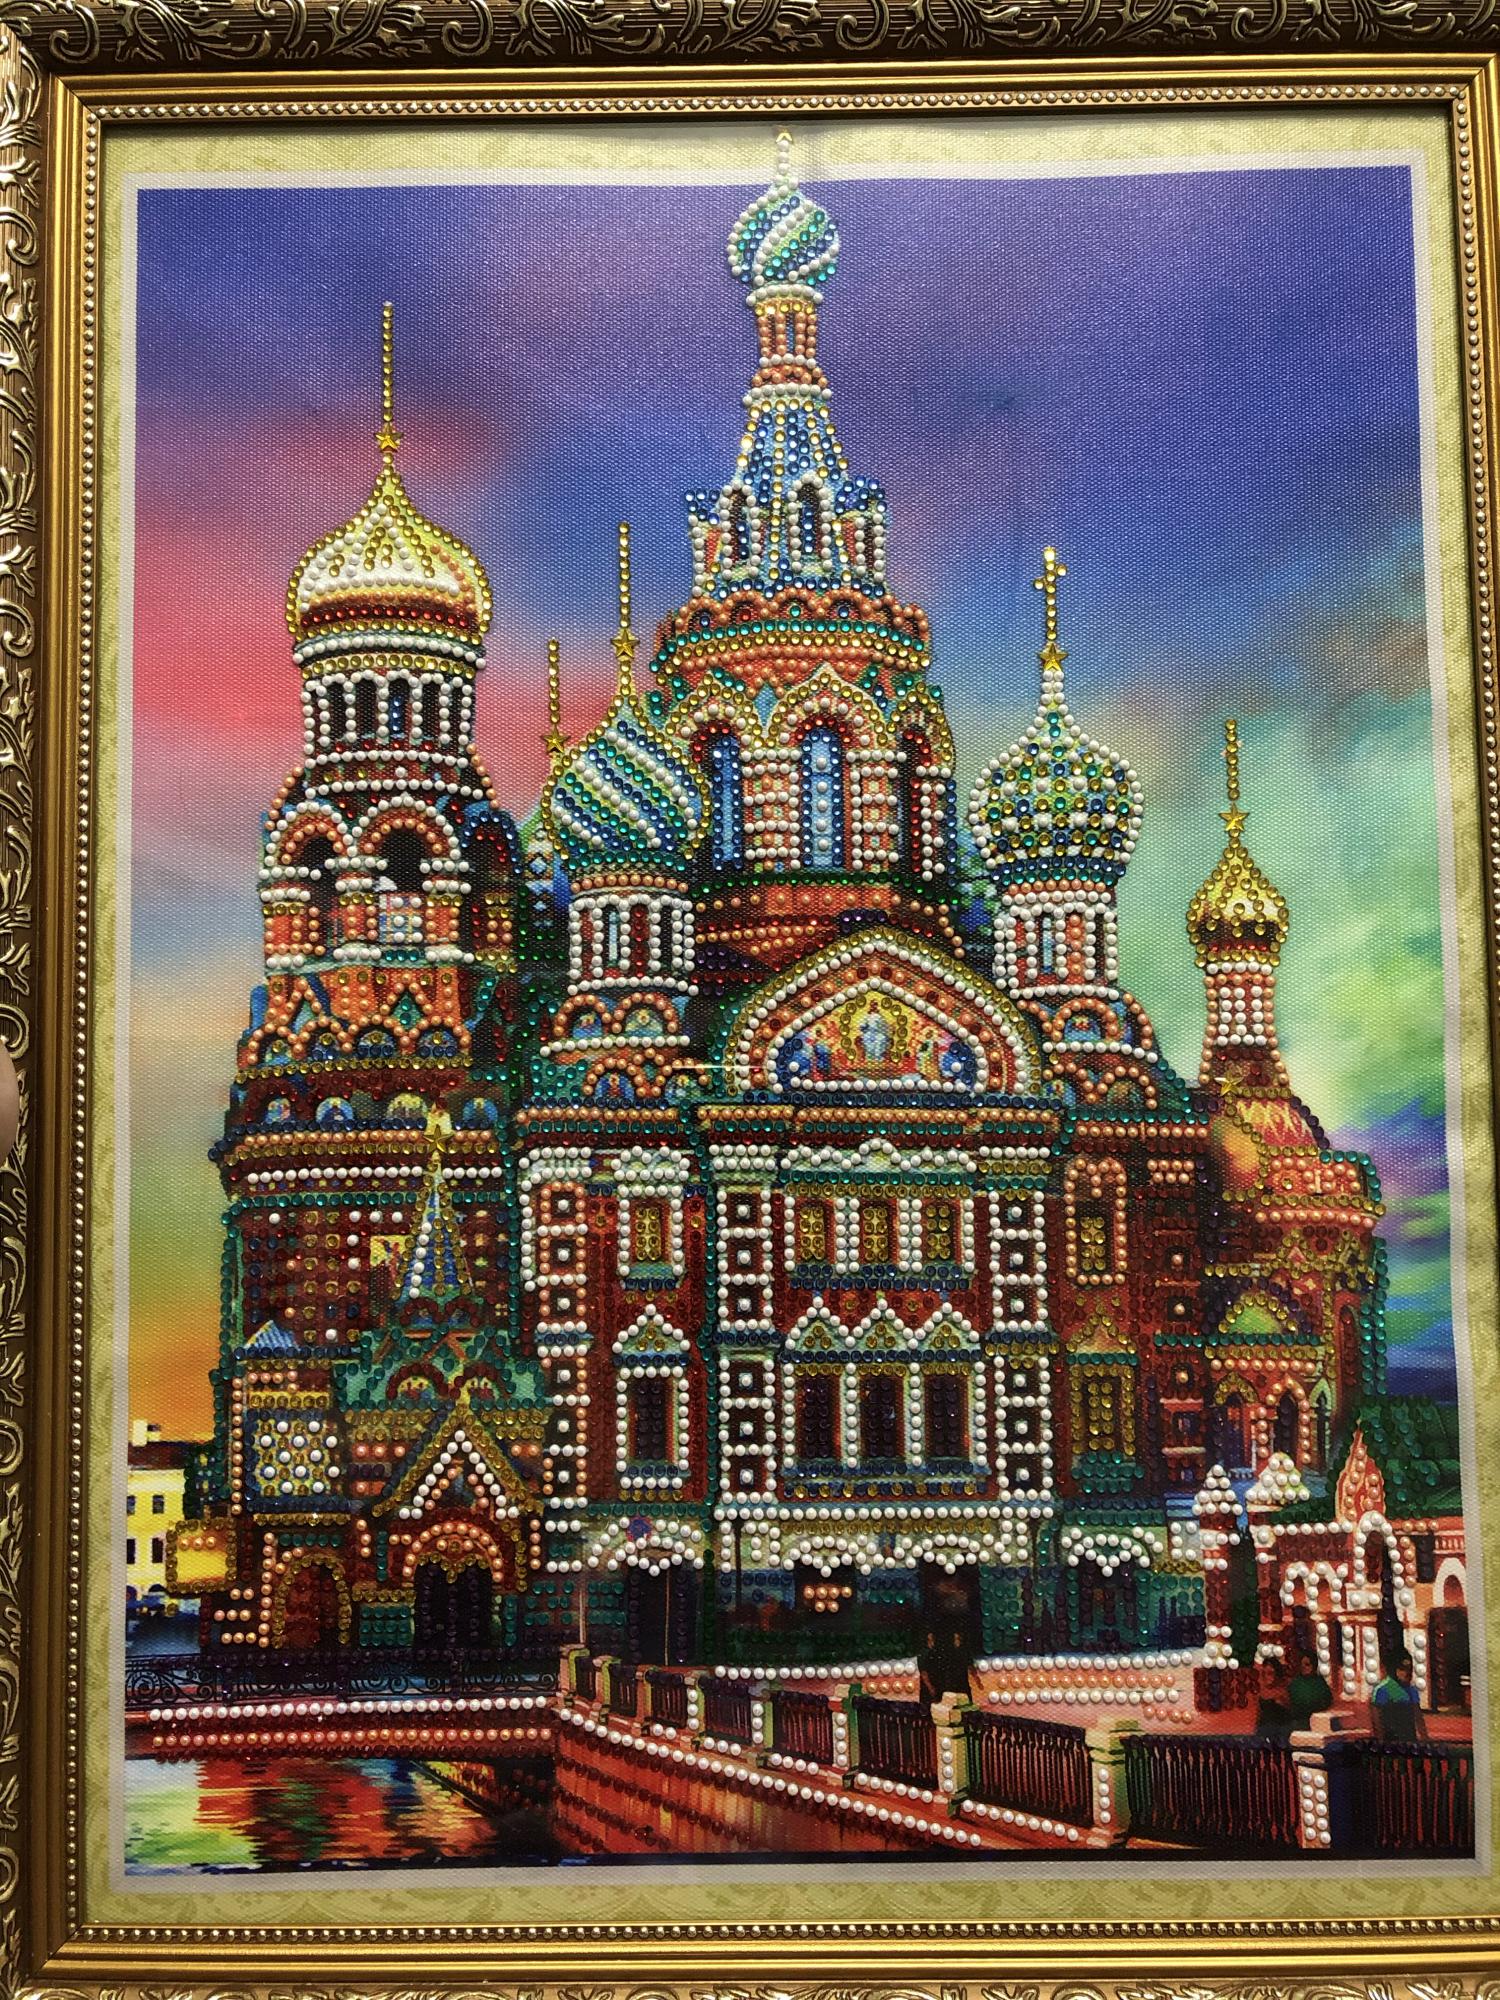 Купить картины на авито в москве